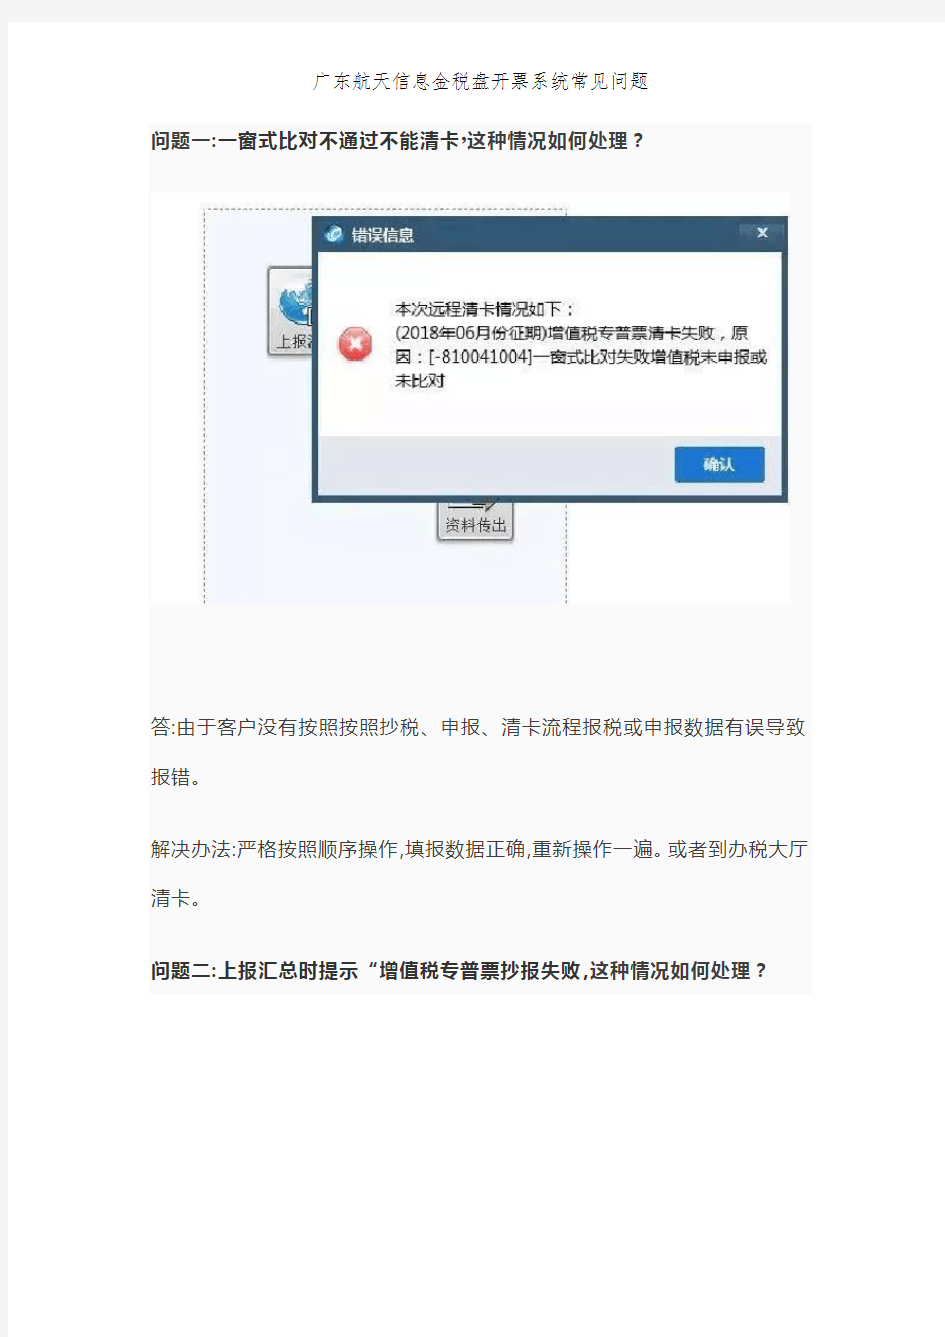 广东航天信息金税盘开票系统常见问题